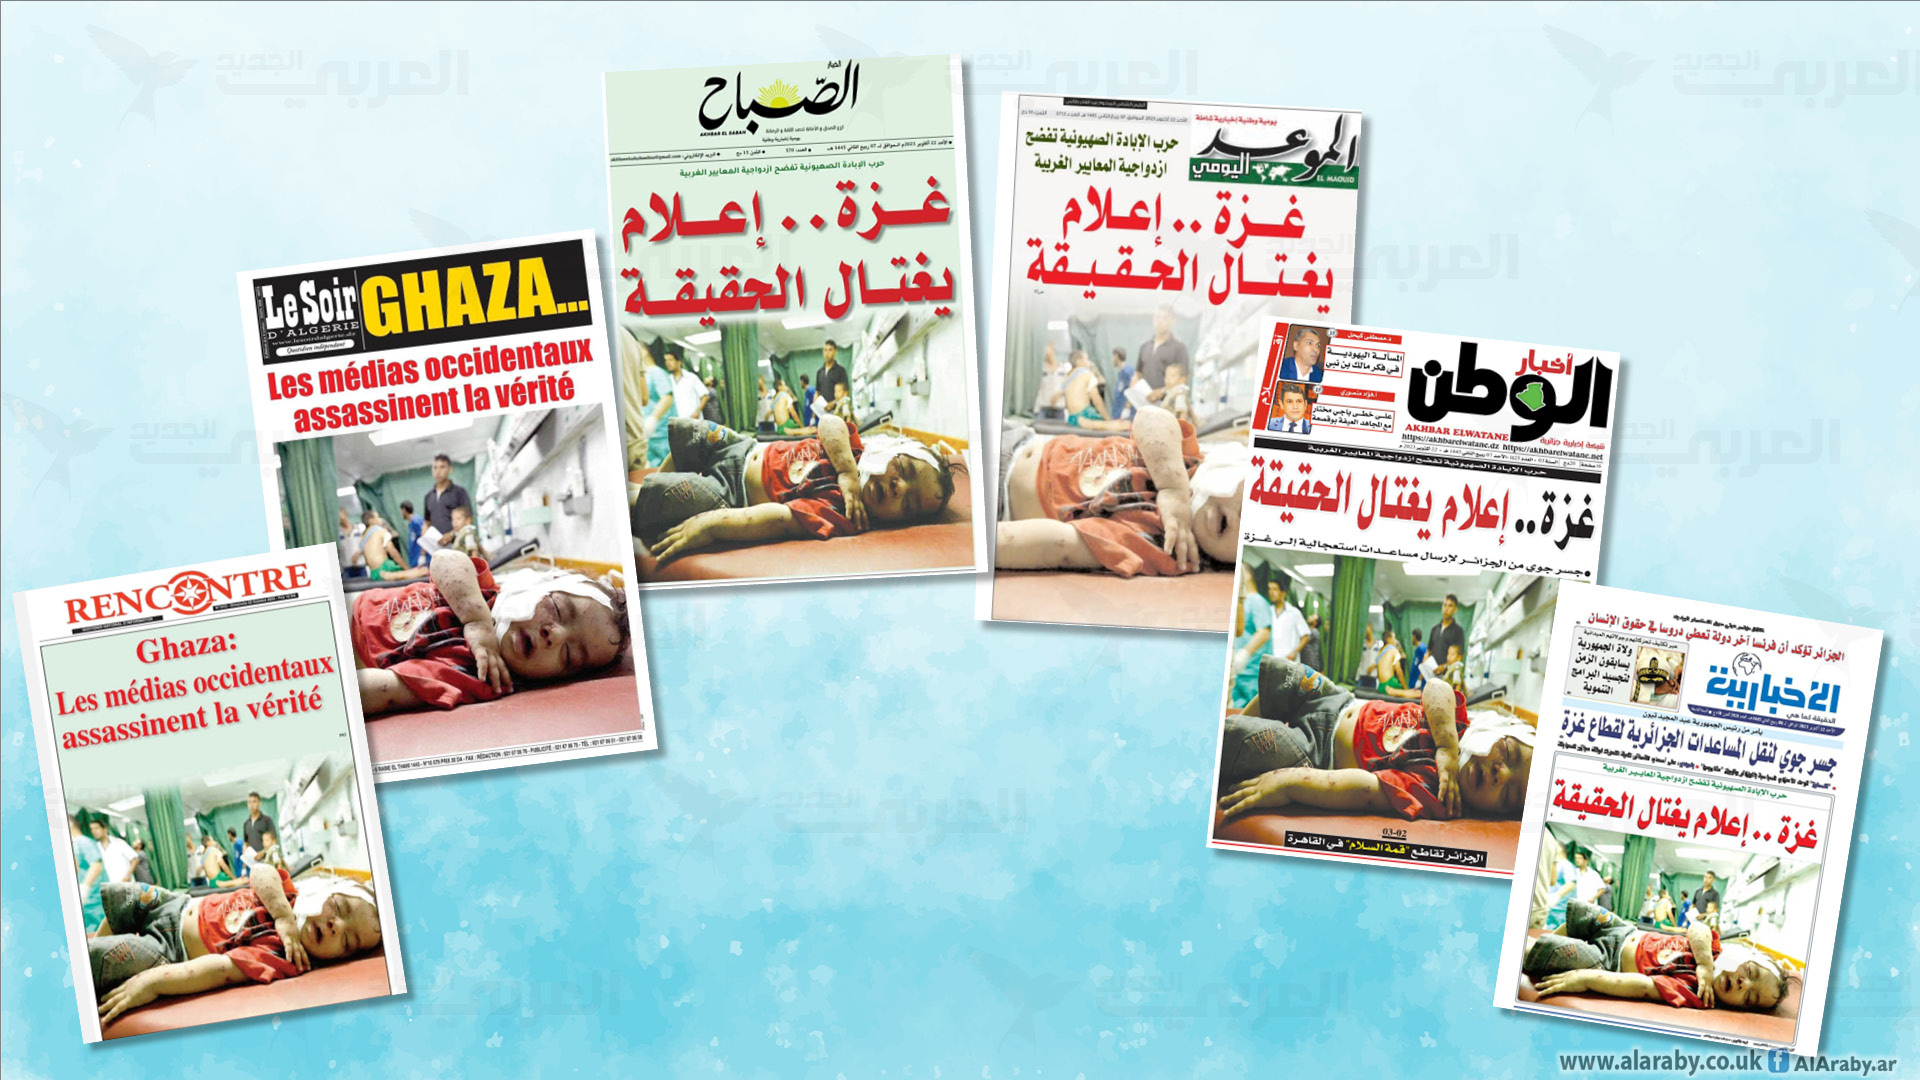 30 صحيفة جزائرية تخرج بعنوان موحد دعما لغزة.. ماذا كتبت؟